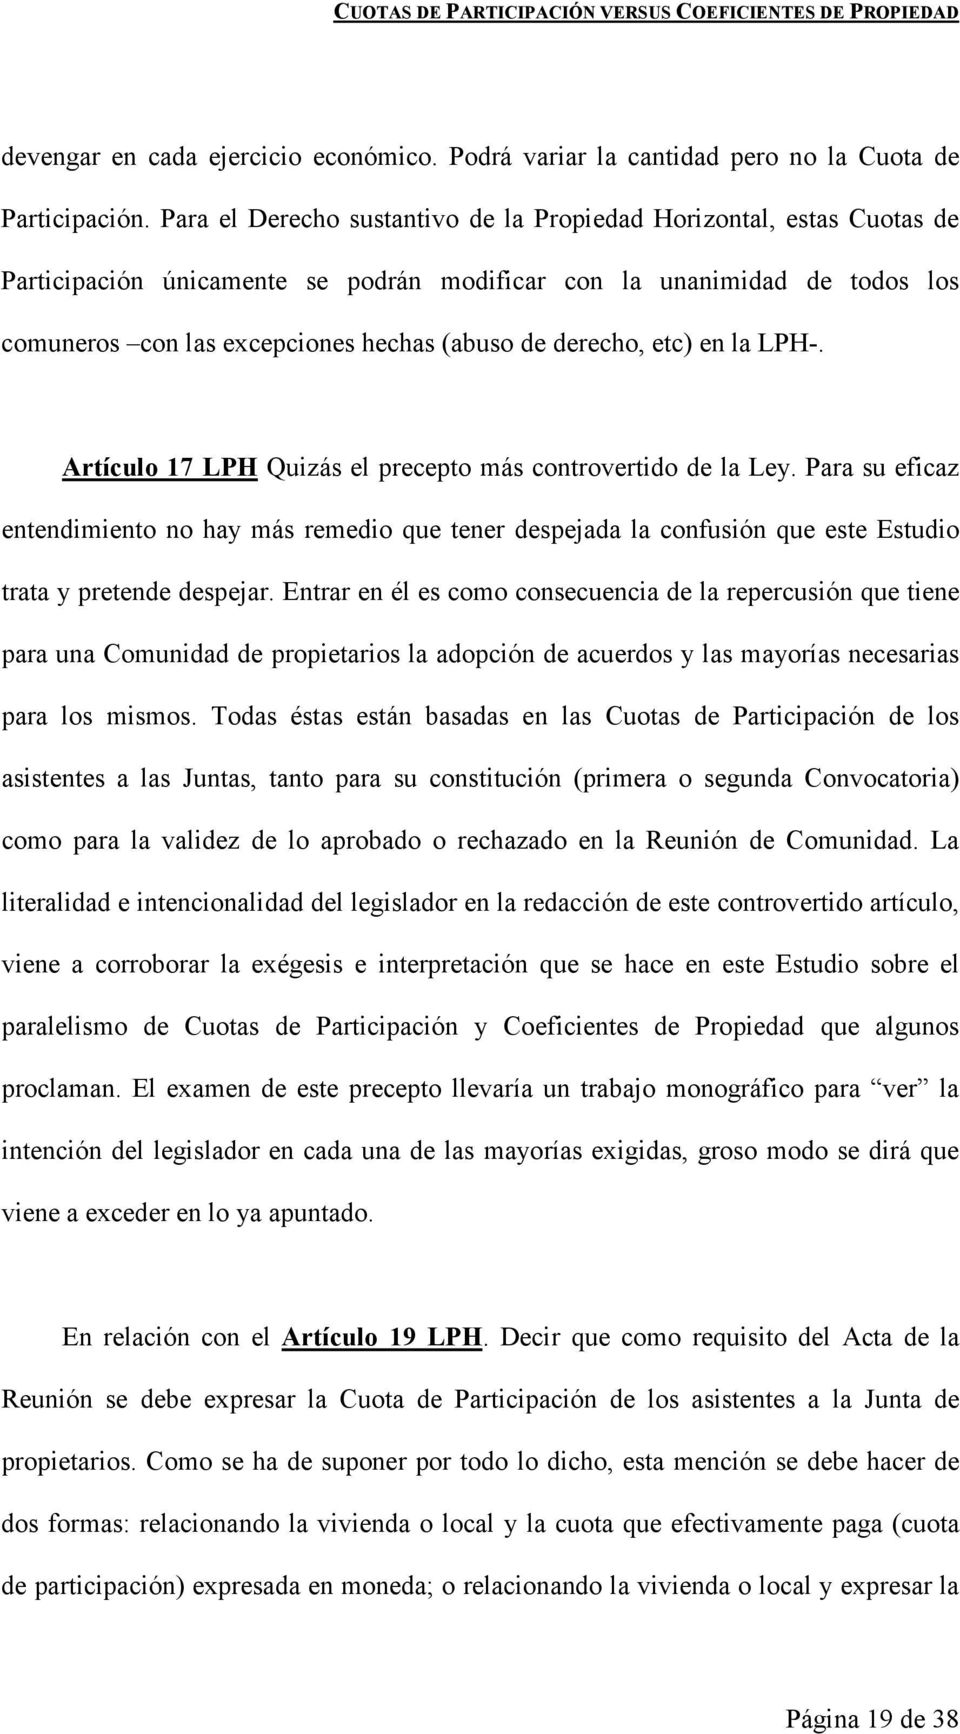 derecho, etc) en la LPH-. Artículo 17 LPH Quizás el precepto más controvertido de la Ley.